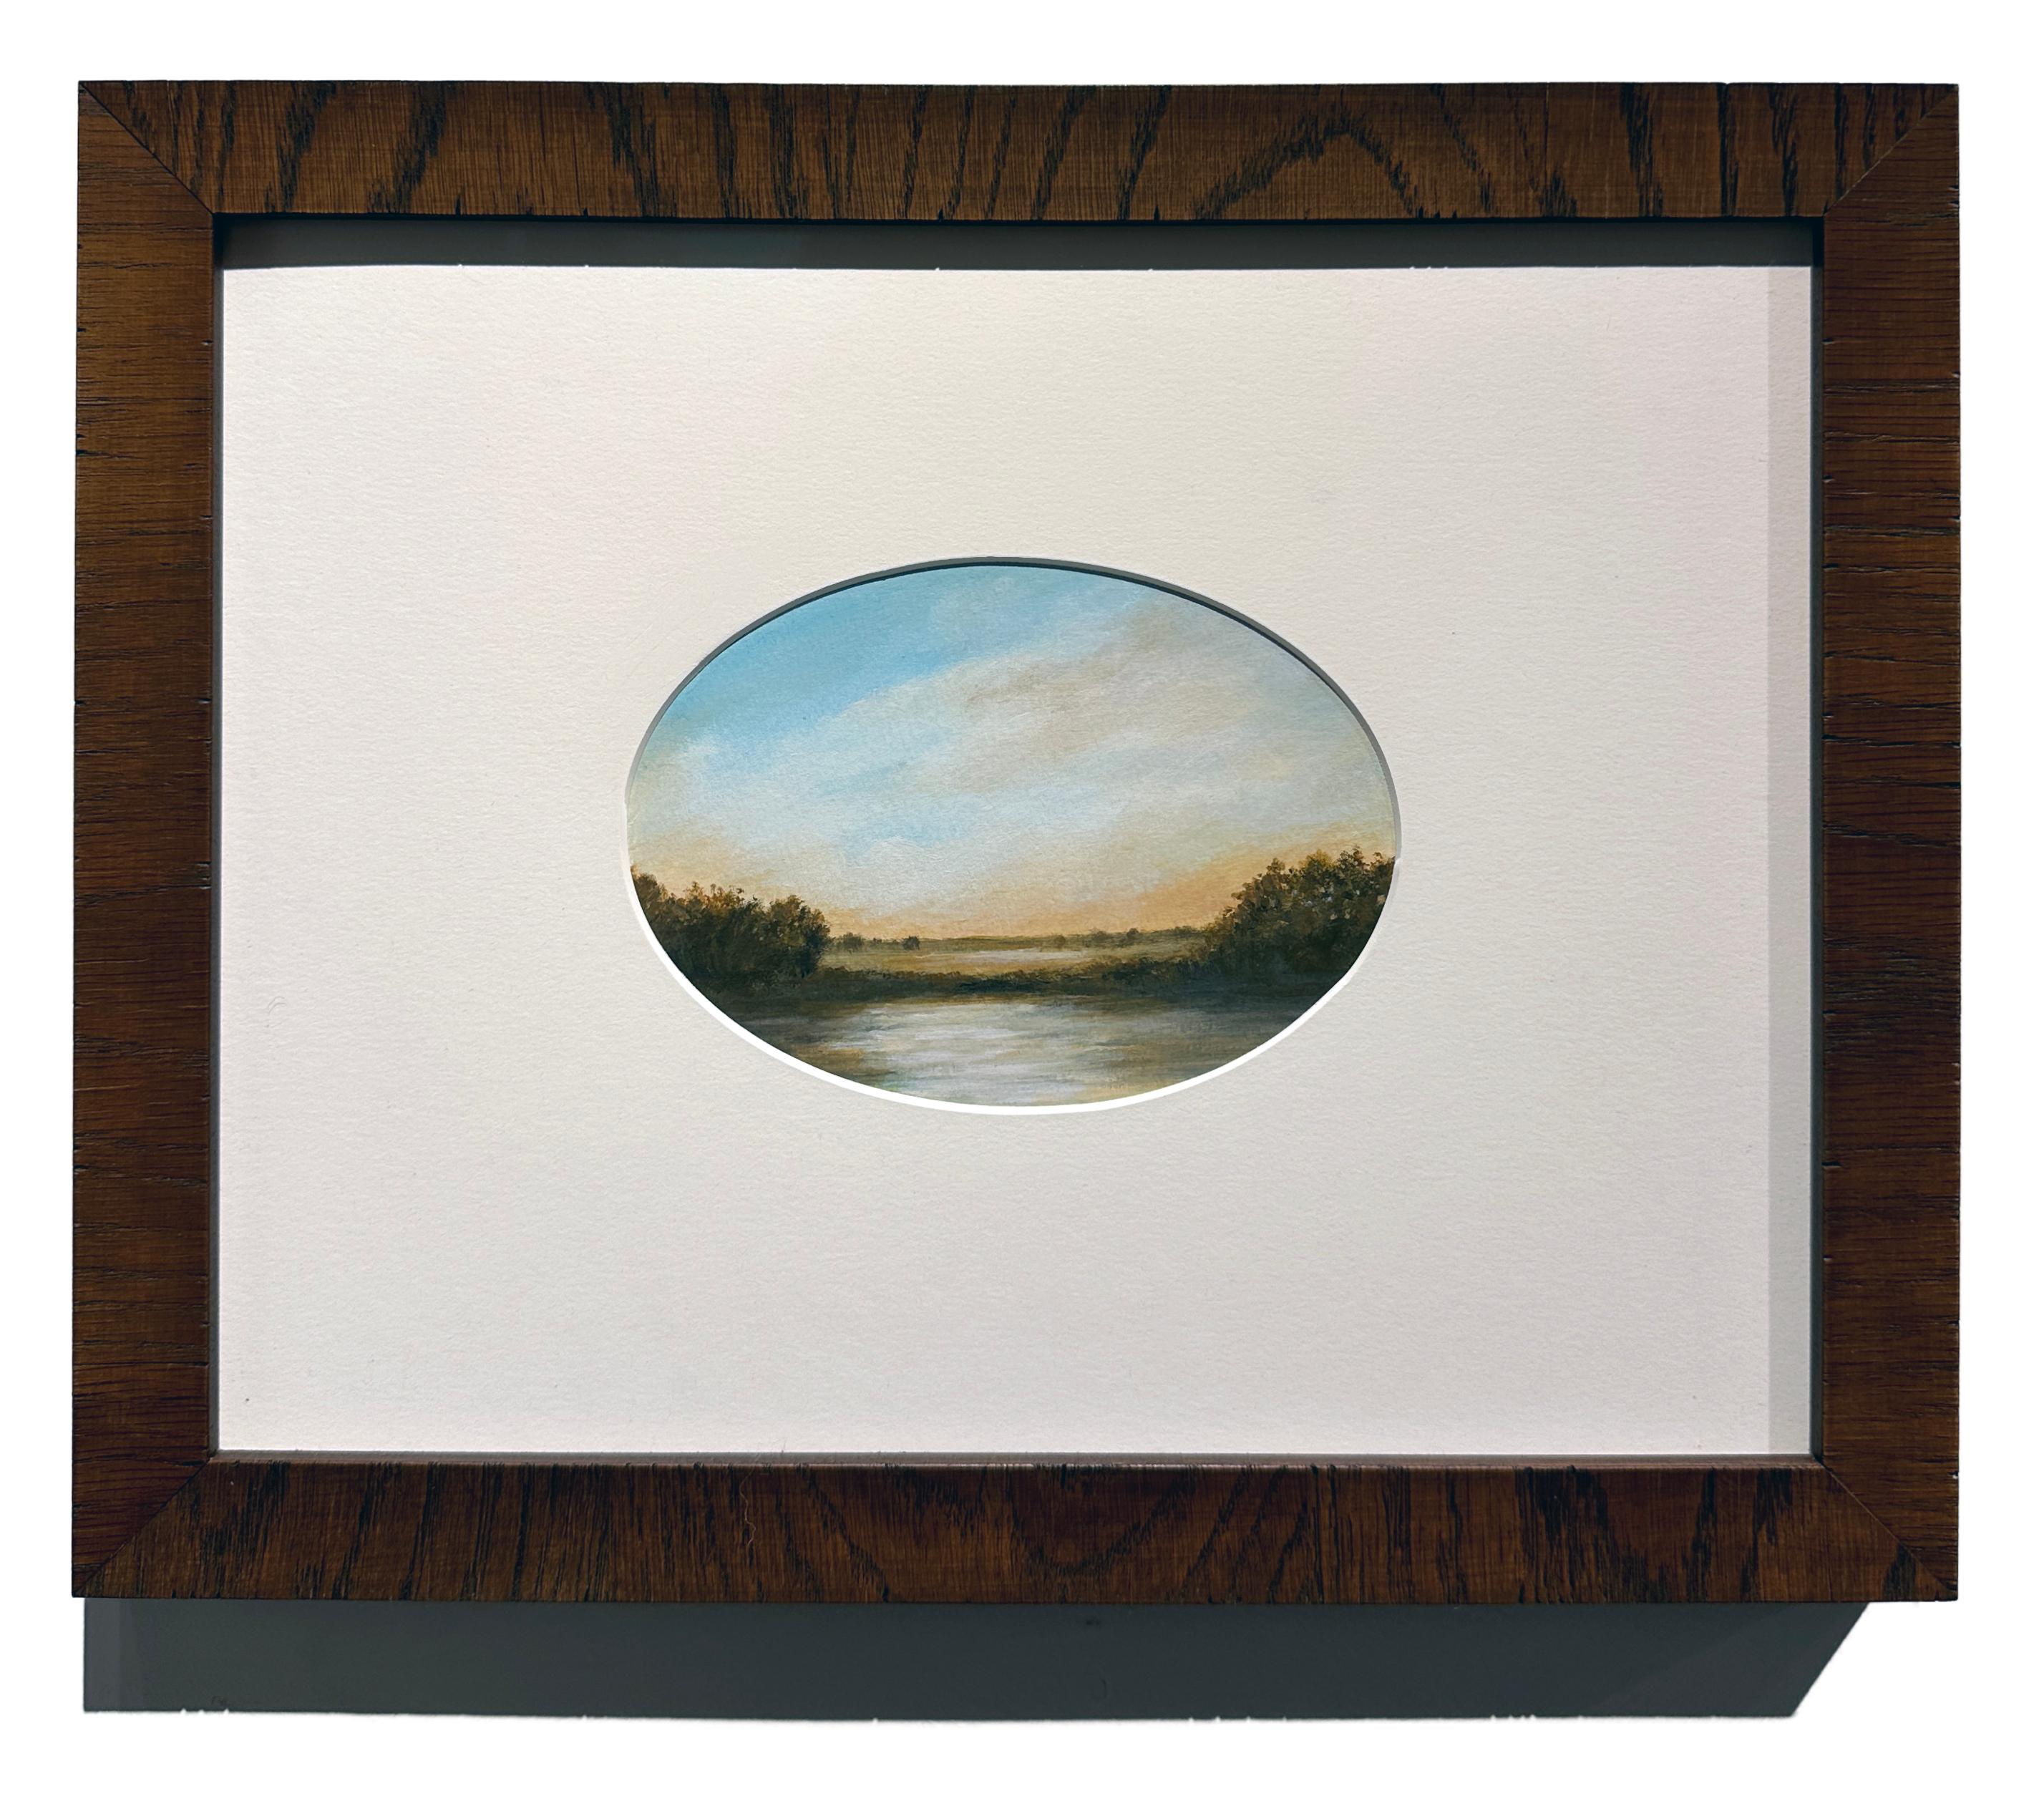 Teich – ruhige Landschaft, Sonne nur am Horizont, wolkengefüllter Himmel – Painting von Ahzad Bogosian